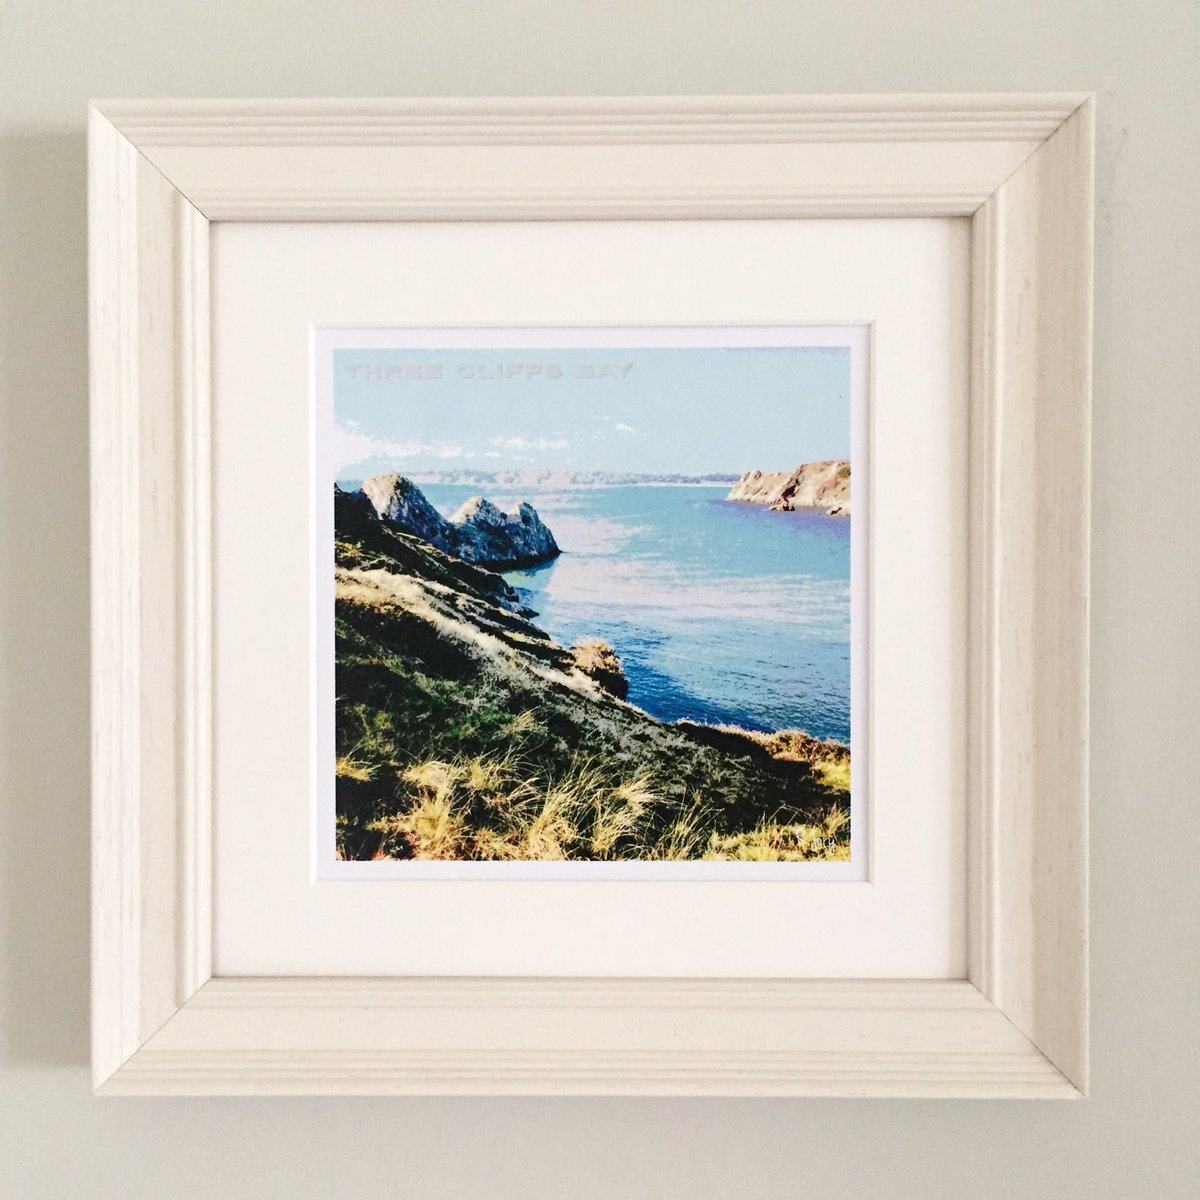 Rebecca Jory Art #etsyseller #Threecliffsbay #coastalart #coastalprints #photoart #framedprints #gowerart #gowerlove #photography #beach